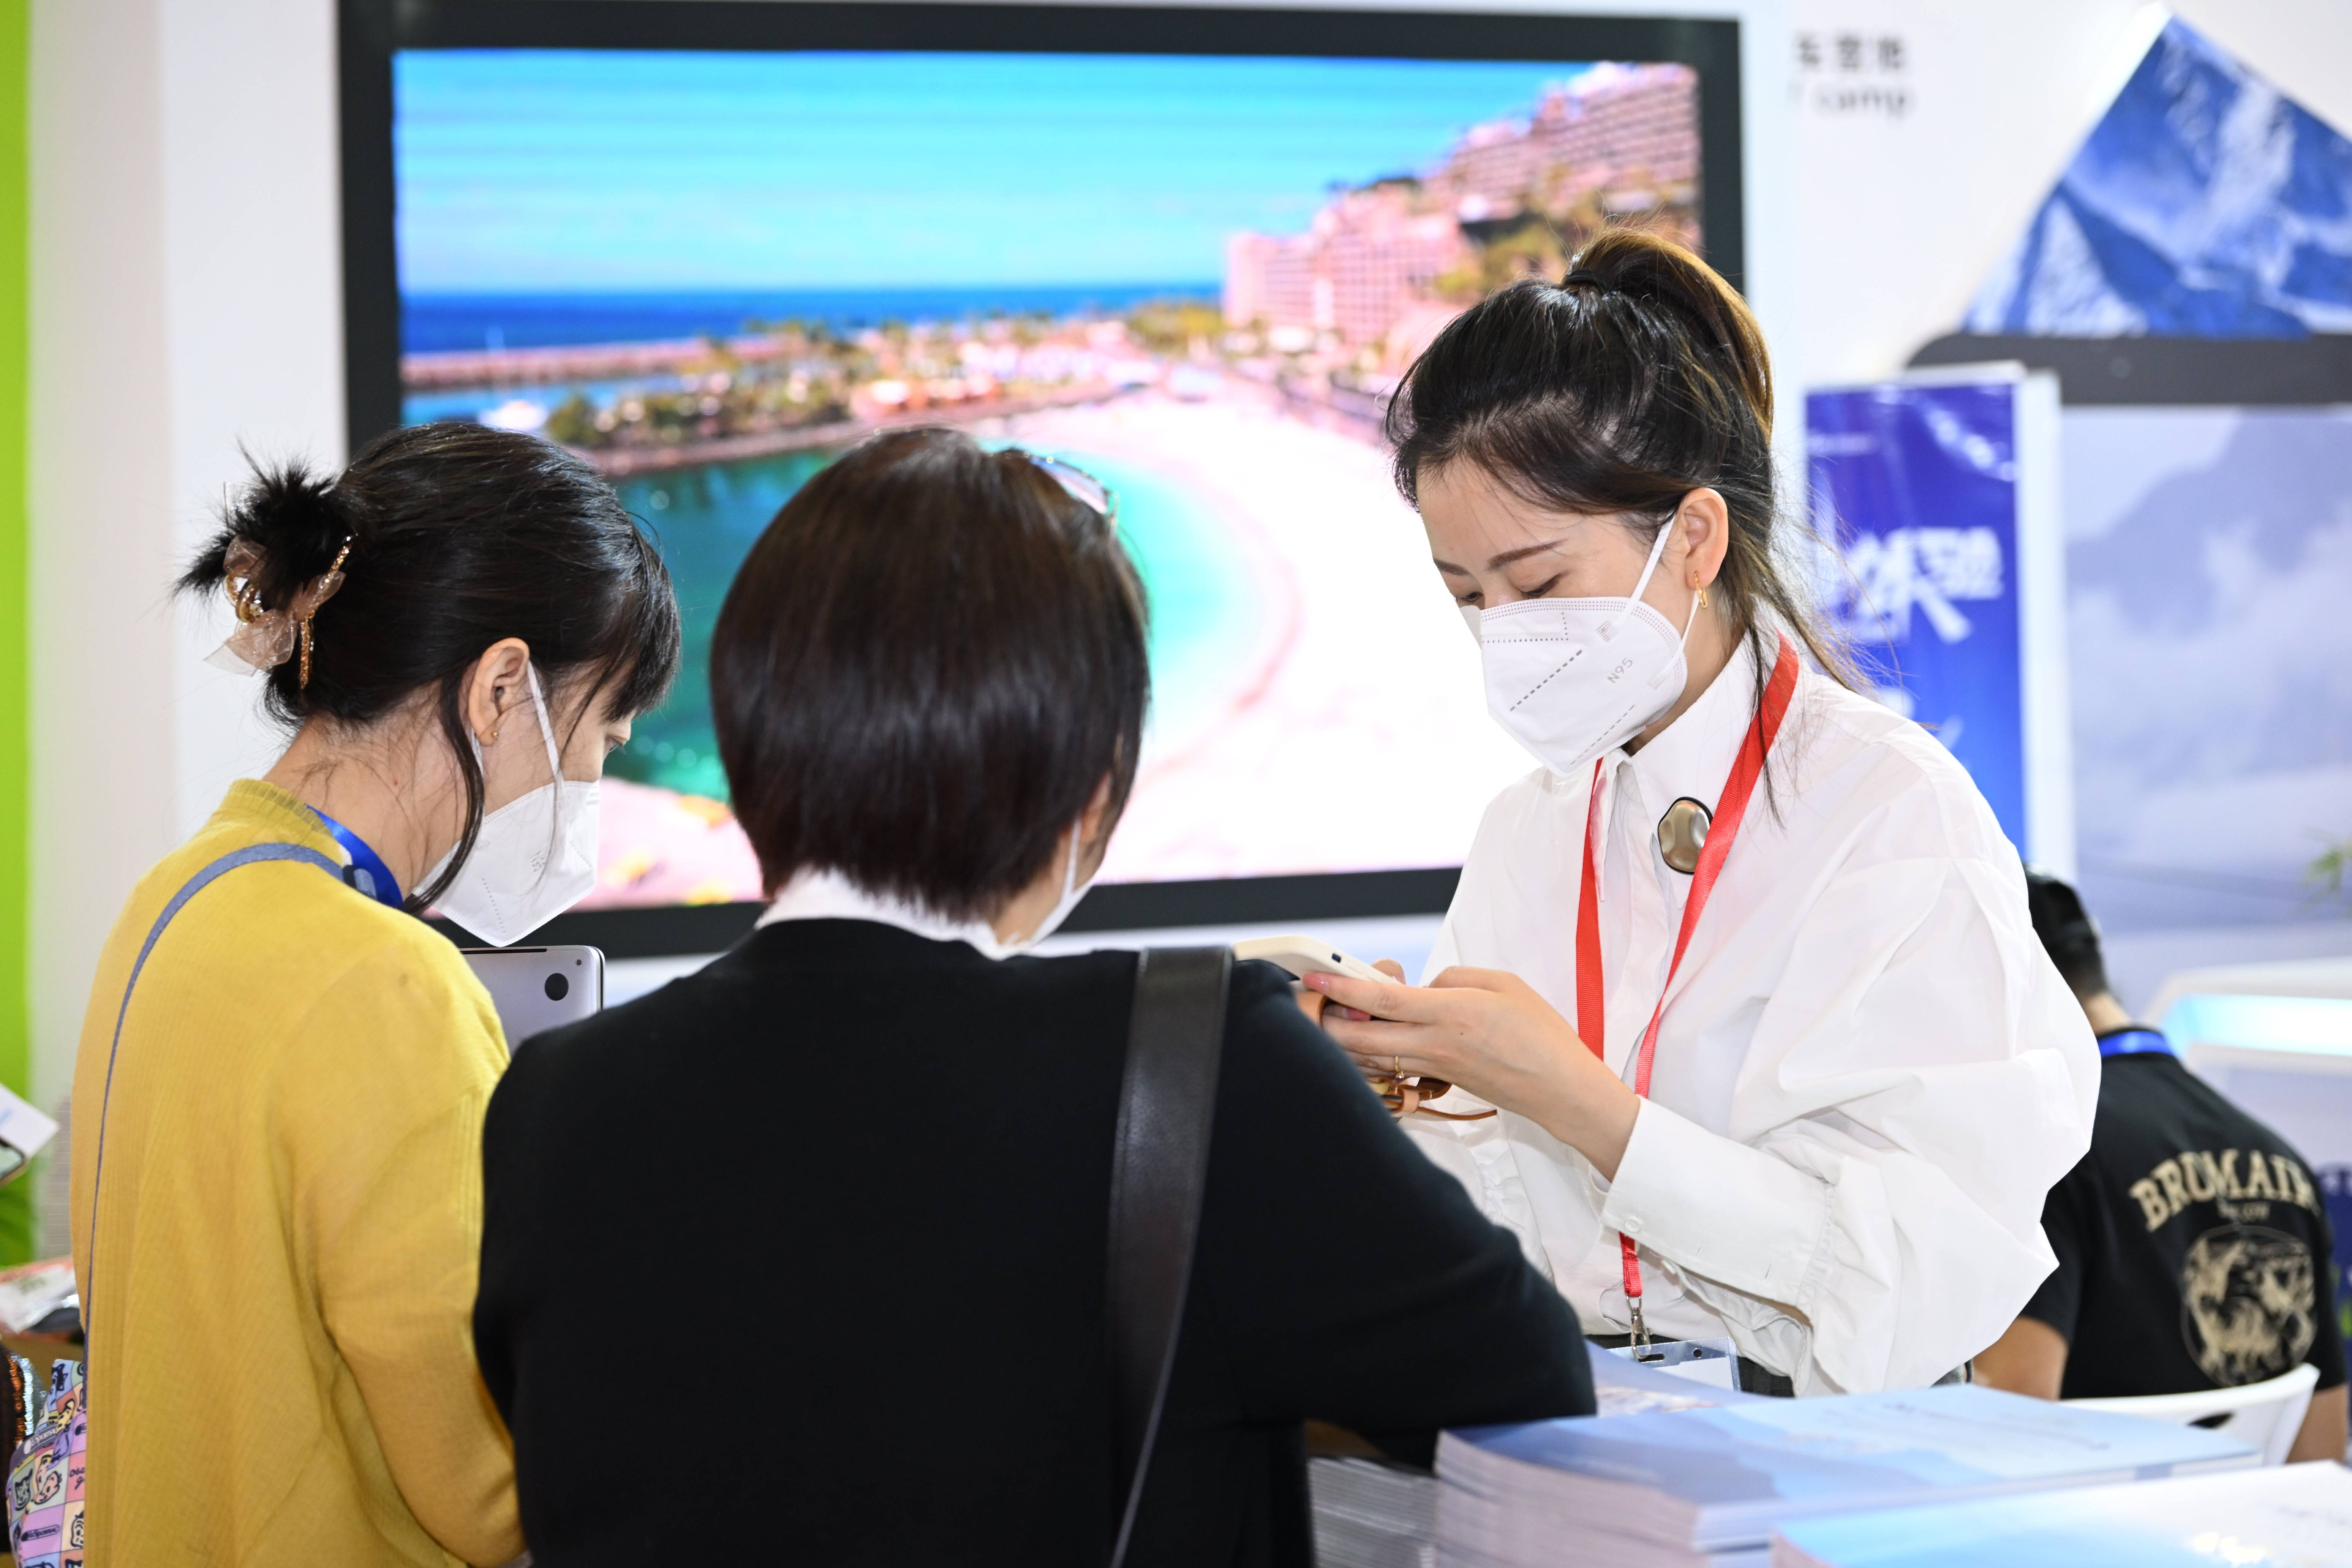 2022中国国际旅交会 | 国际山地旅游联盟推广山地旅游新魅力